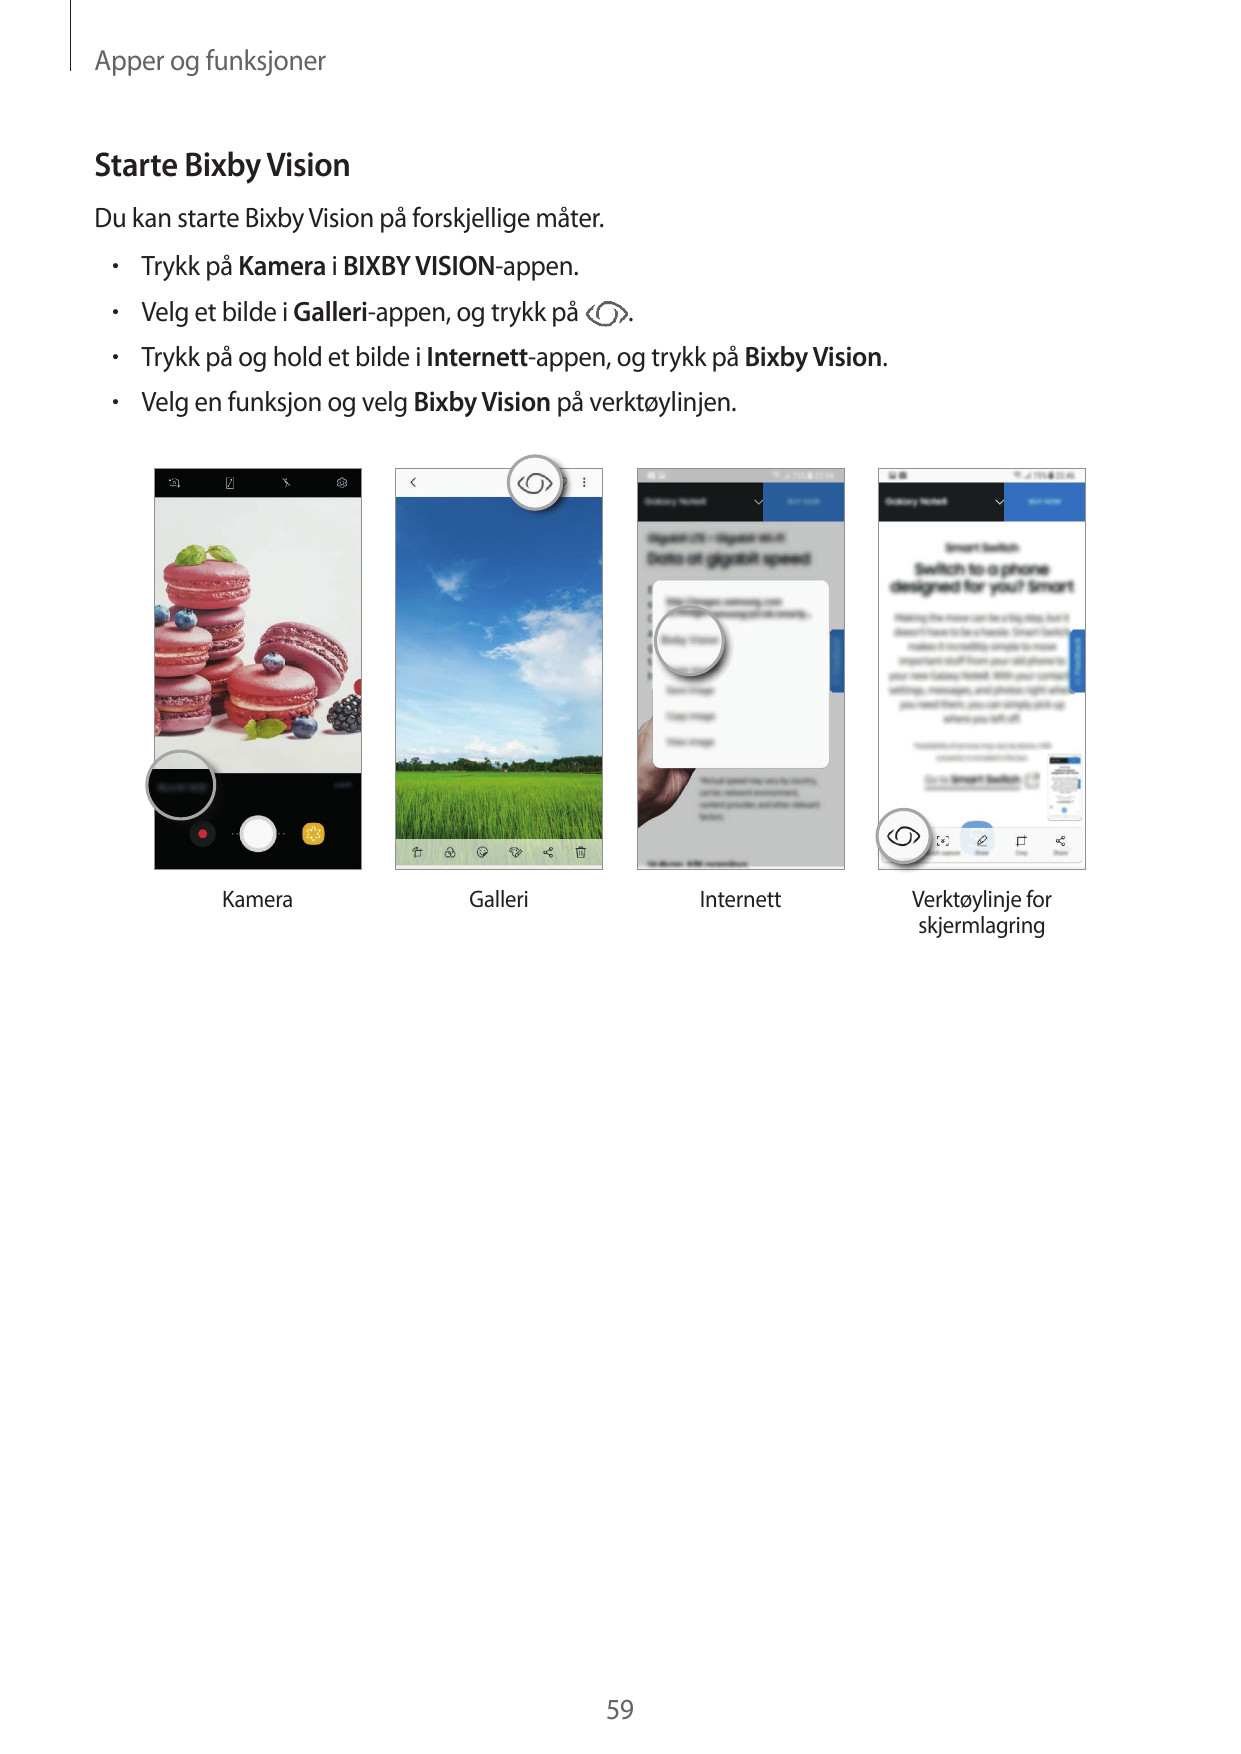 Apper og funksjonerStarte Bixby VisionDu kan starte Bixby Vision på forskjellige måter.• Trykk på Kamera i BIXBY VISION-appen.• 